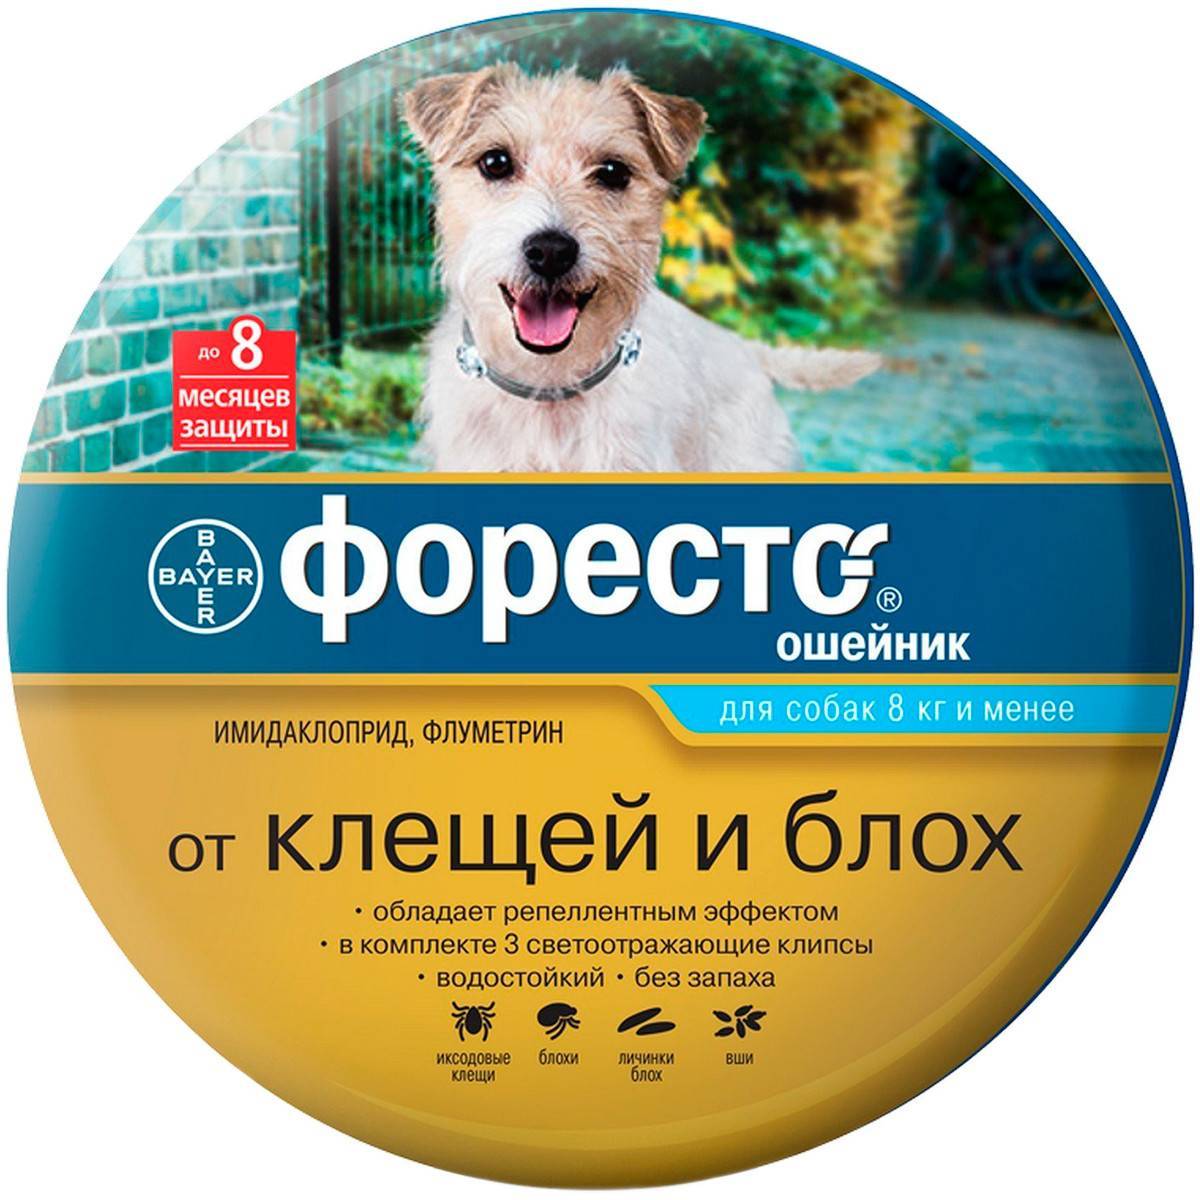 Ошейник форесто для собак: описание изделия и особенности использования защитного средства